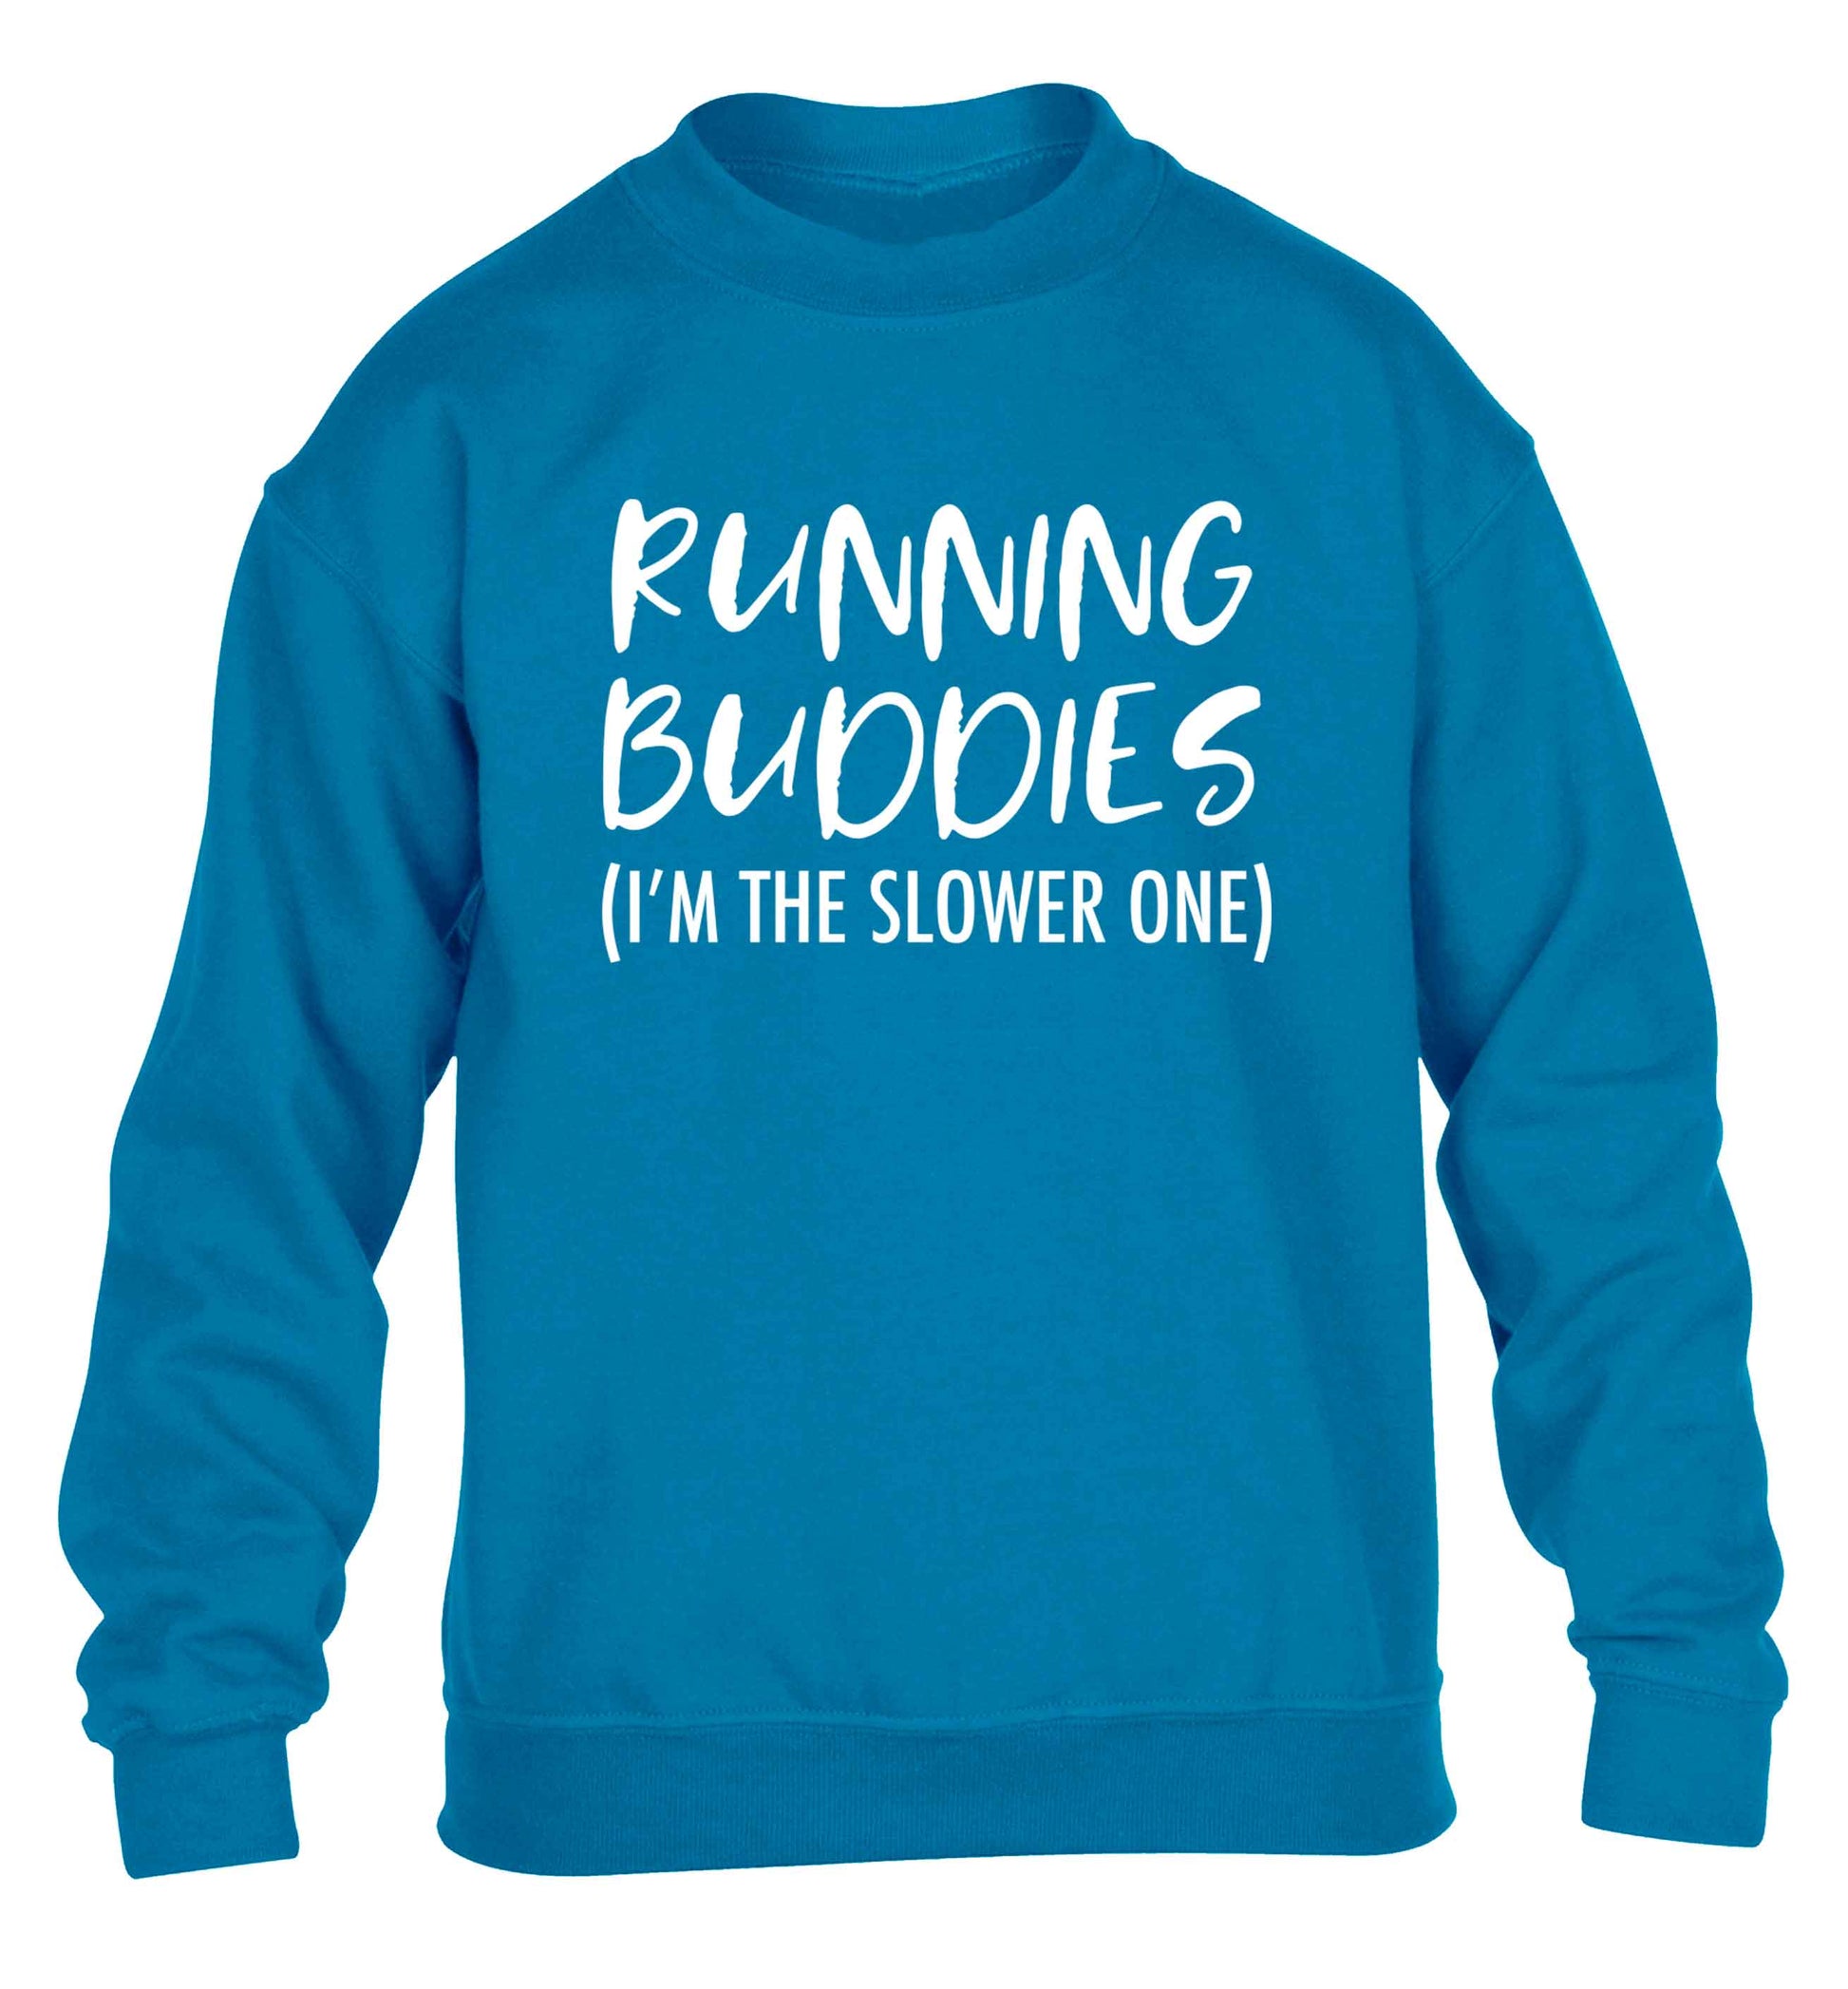 Running buddies (I'm the slower one) children's blue sweater 12-13 Years